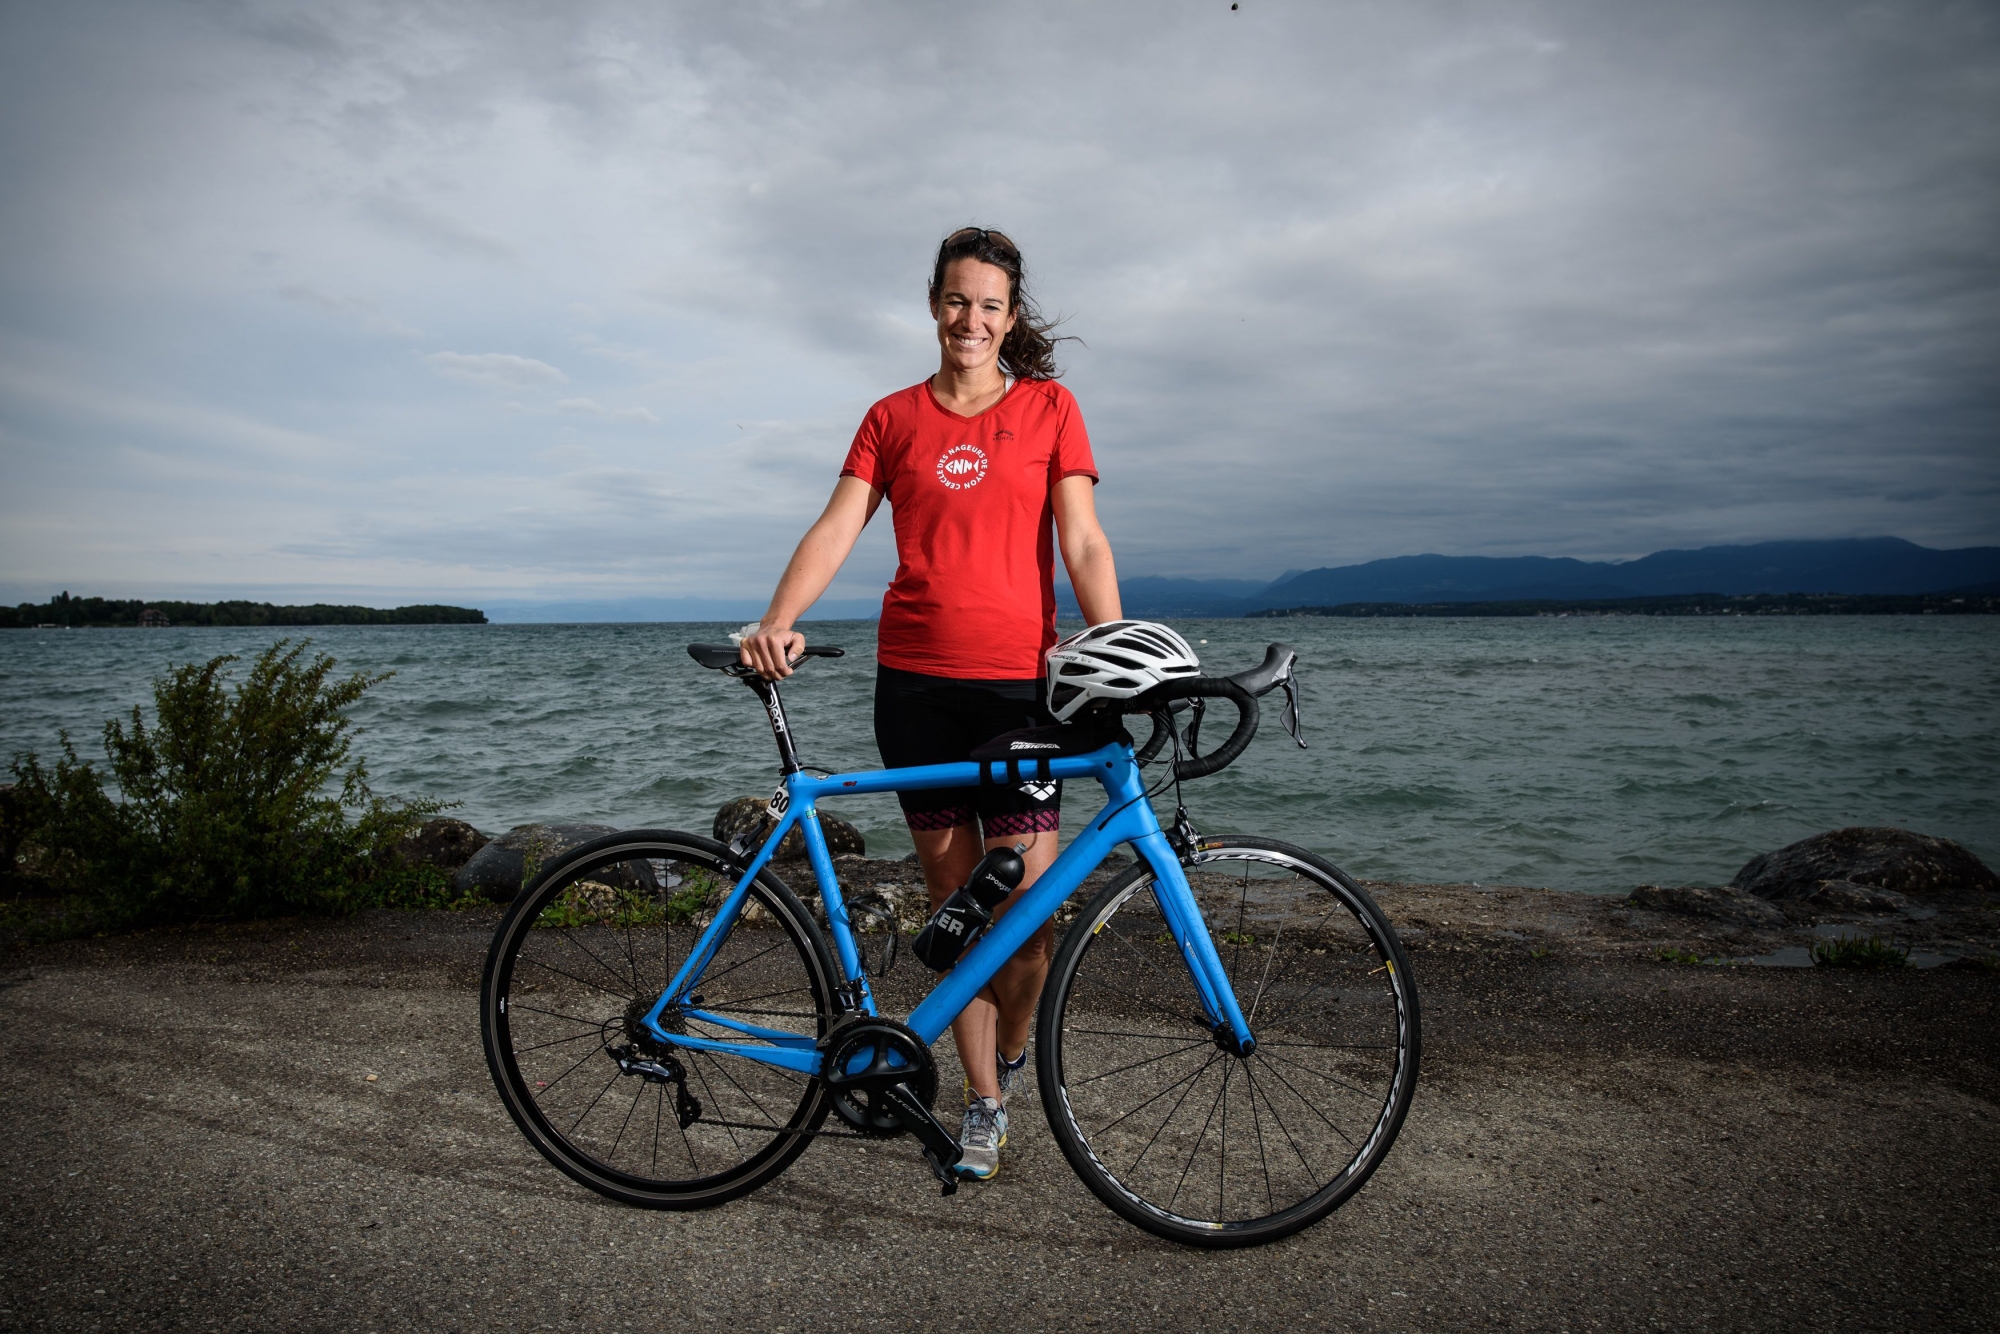 Samedi, Floriane Jeannin enfourchera à nouveau son vélo pour les Championnats du monde de semi-ironman, à Nice.